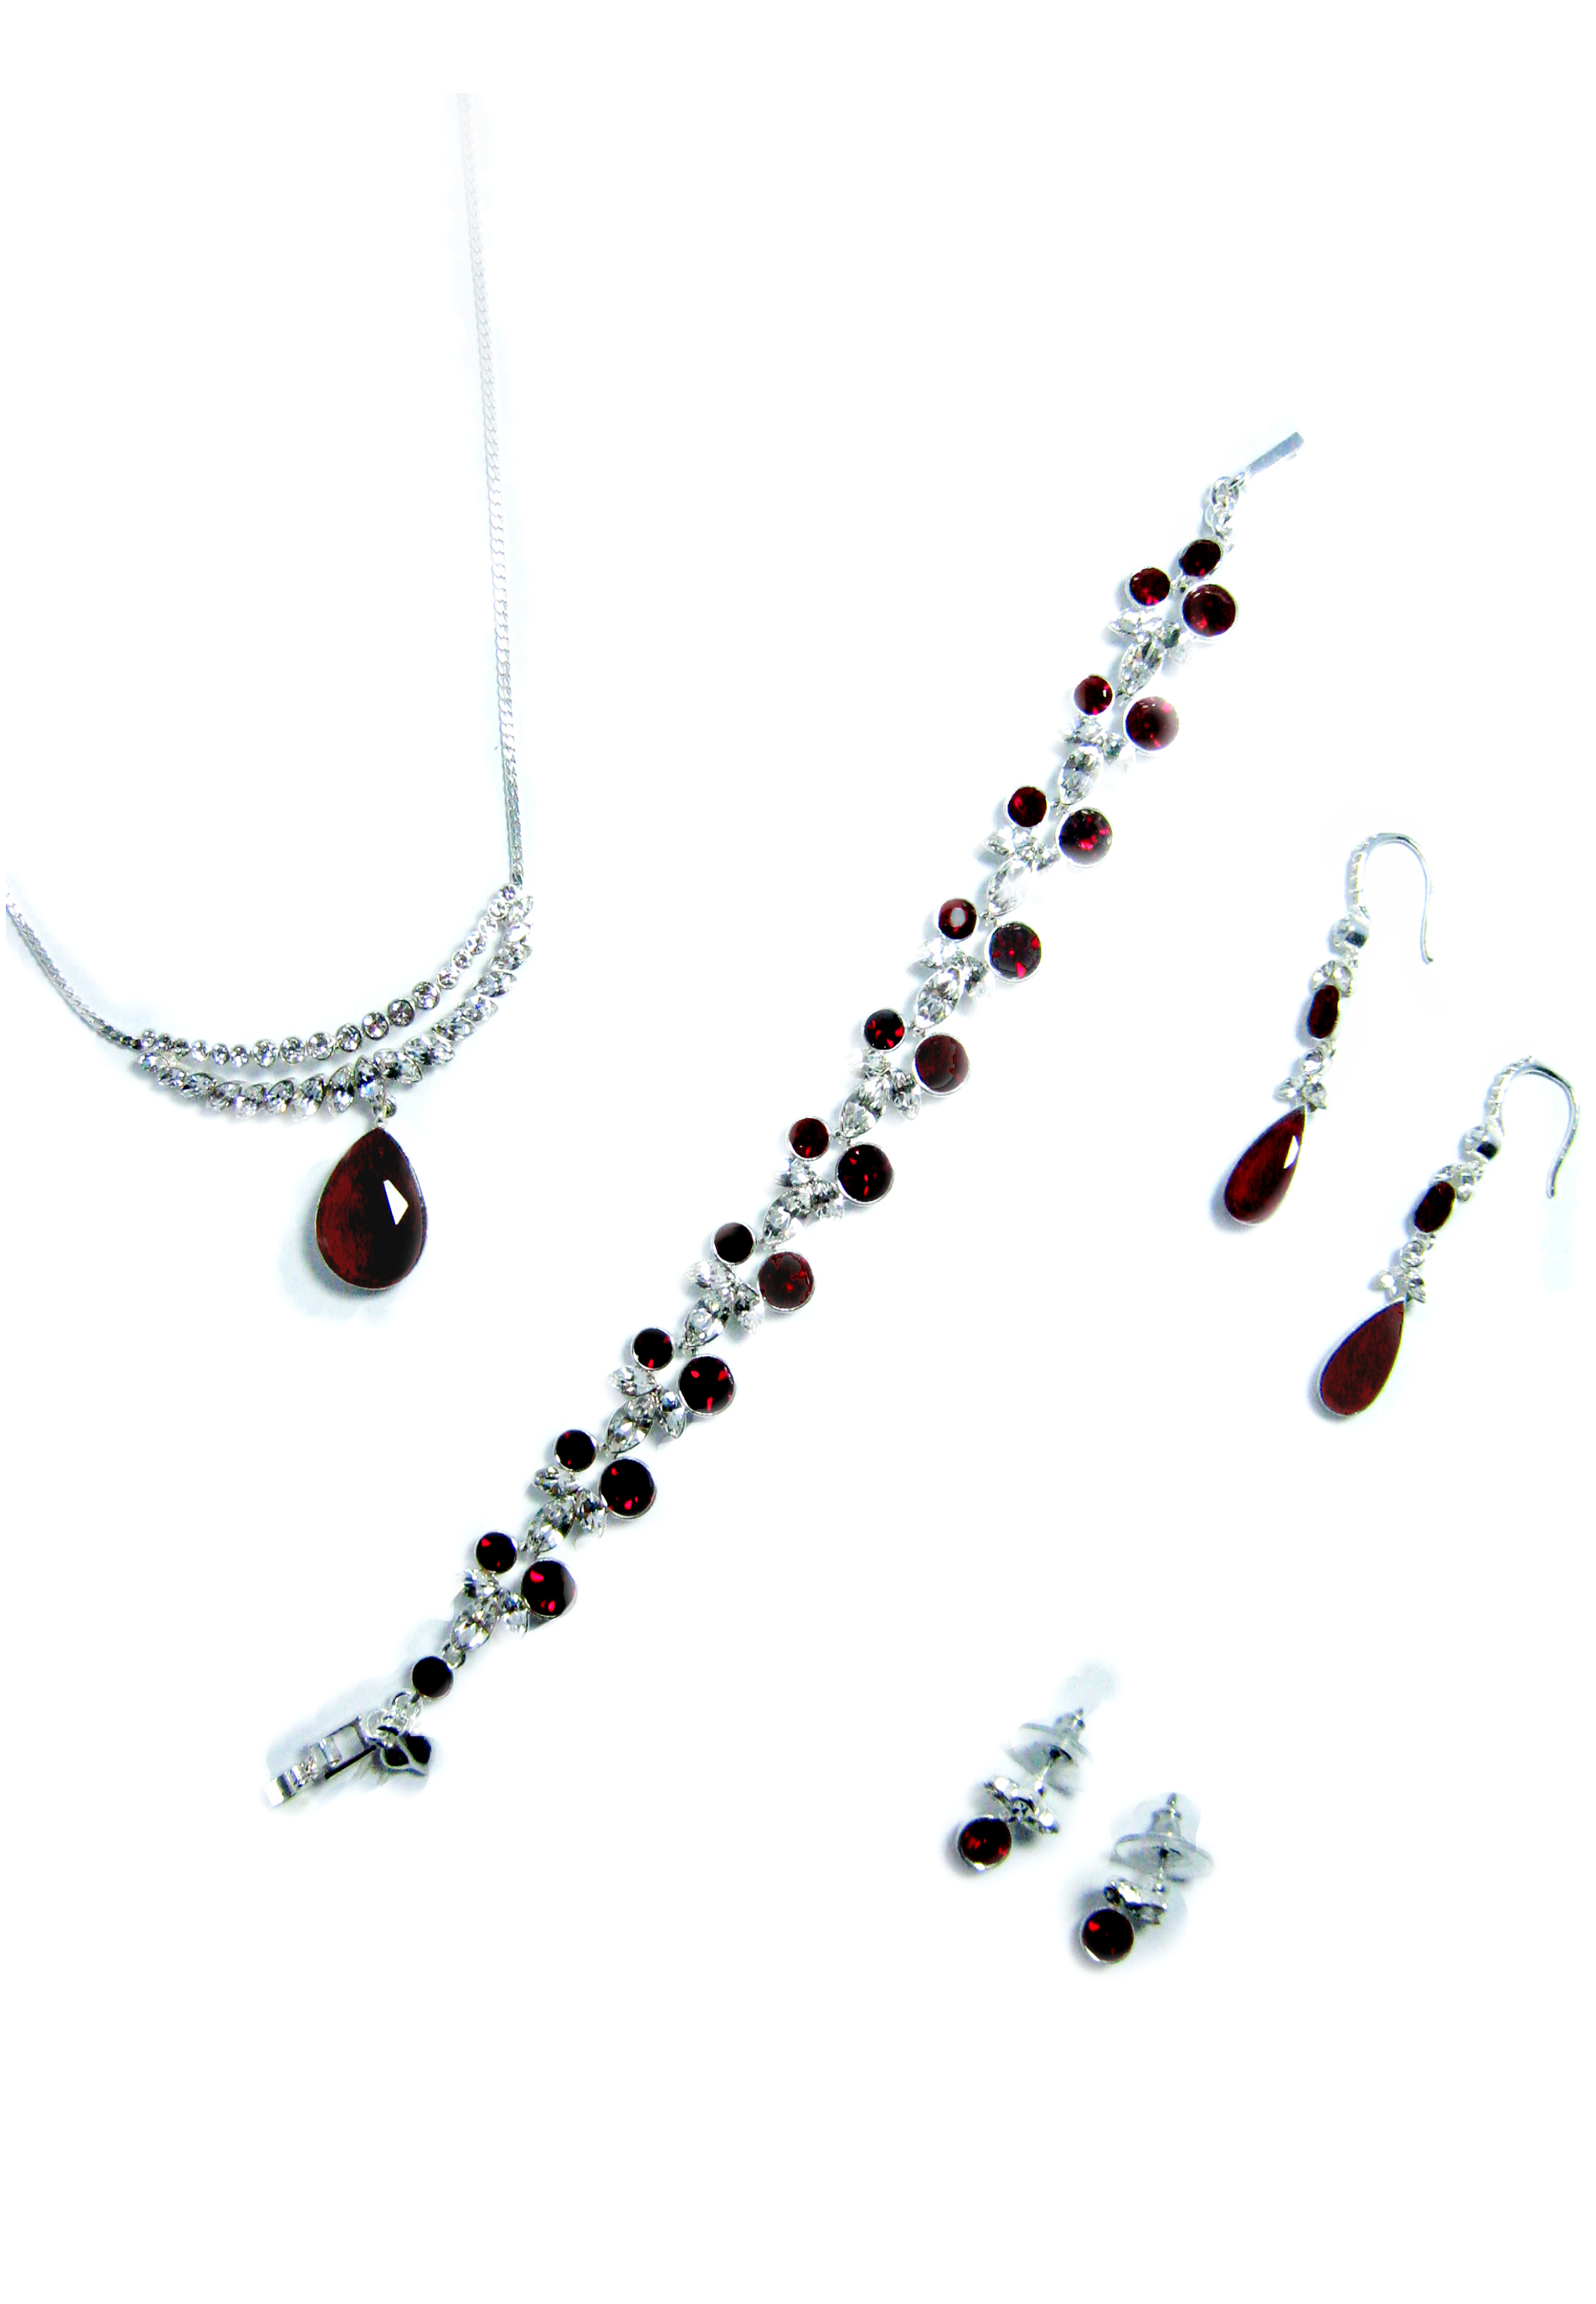 红宝石玻璃项链、手链和耳环